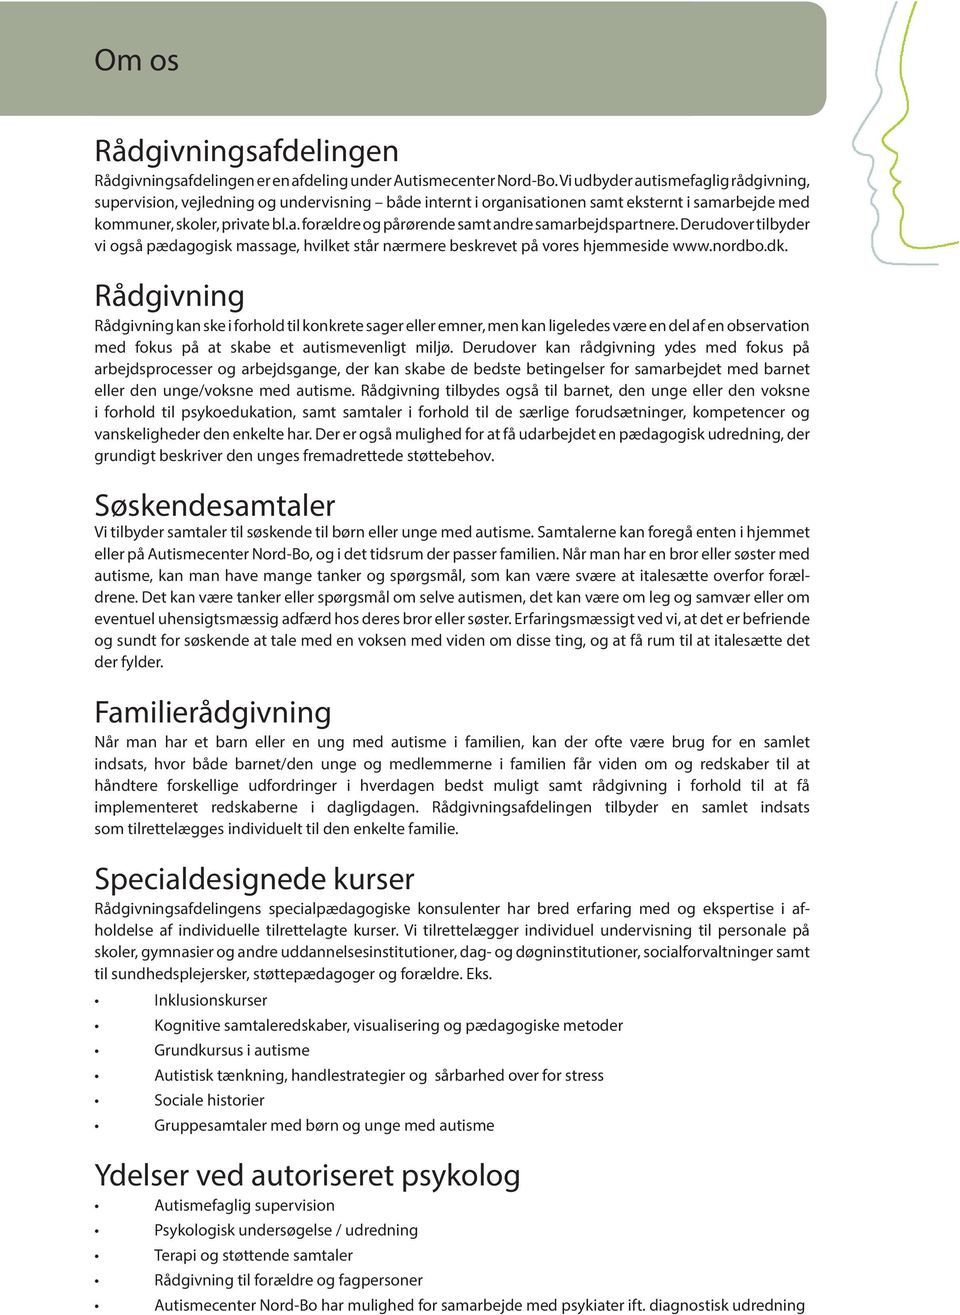 Derudover tilbyder vi også pædagogisk massage, hvilket står nærmere beskrevet på vores hjemmeside www.nordbo.dk.